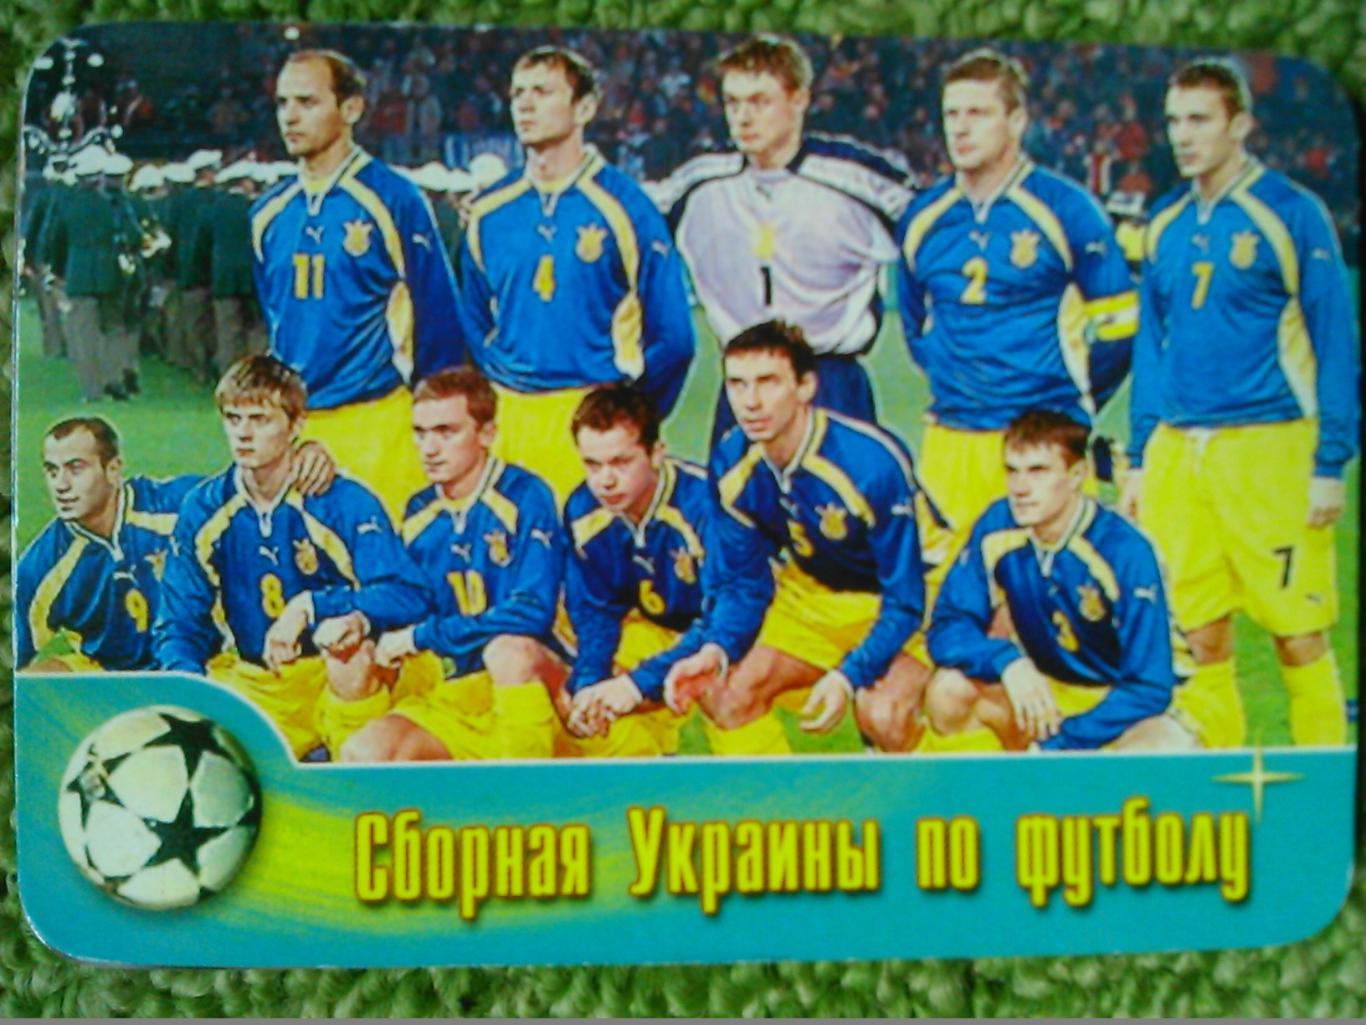 Сборная УКРАИНЫ по футболу ( календарик 2004). Оптом СКИДКИ до 45%!